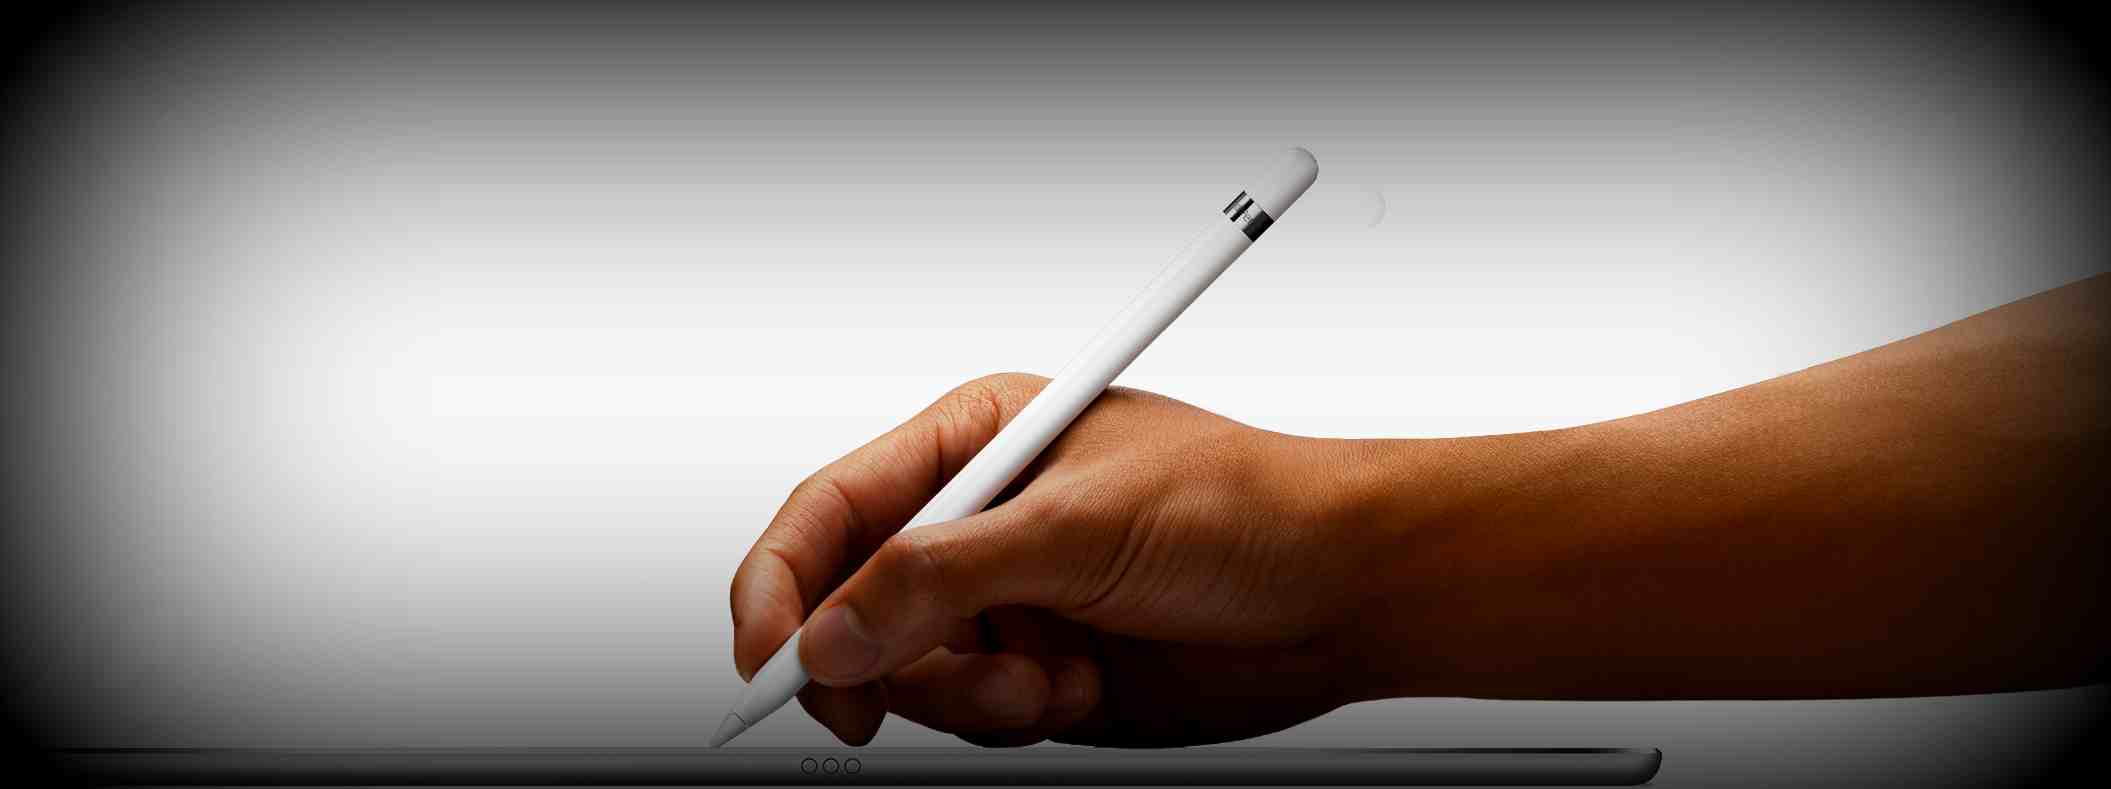 Новый iPad 2018 имеет поддержку стилуса Apple Pencil